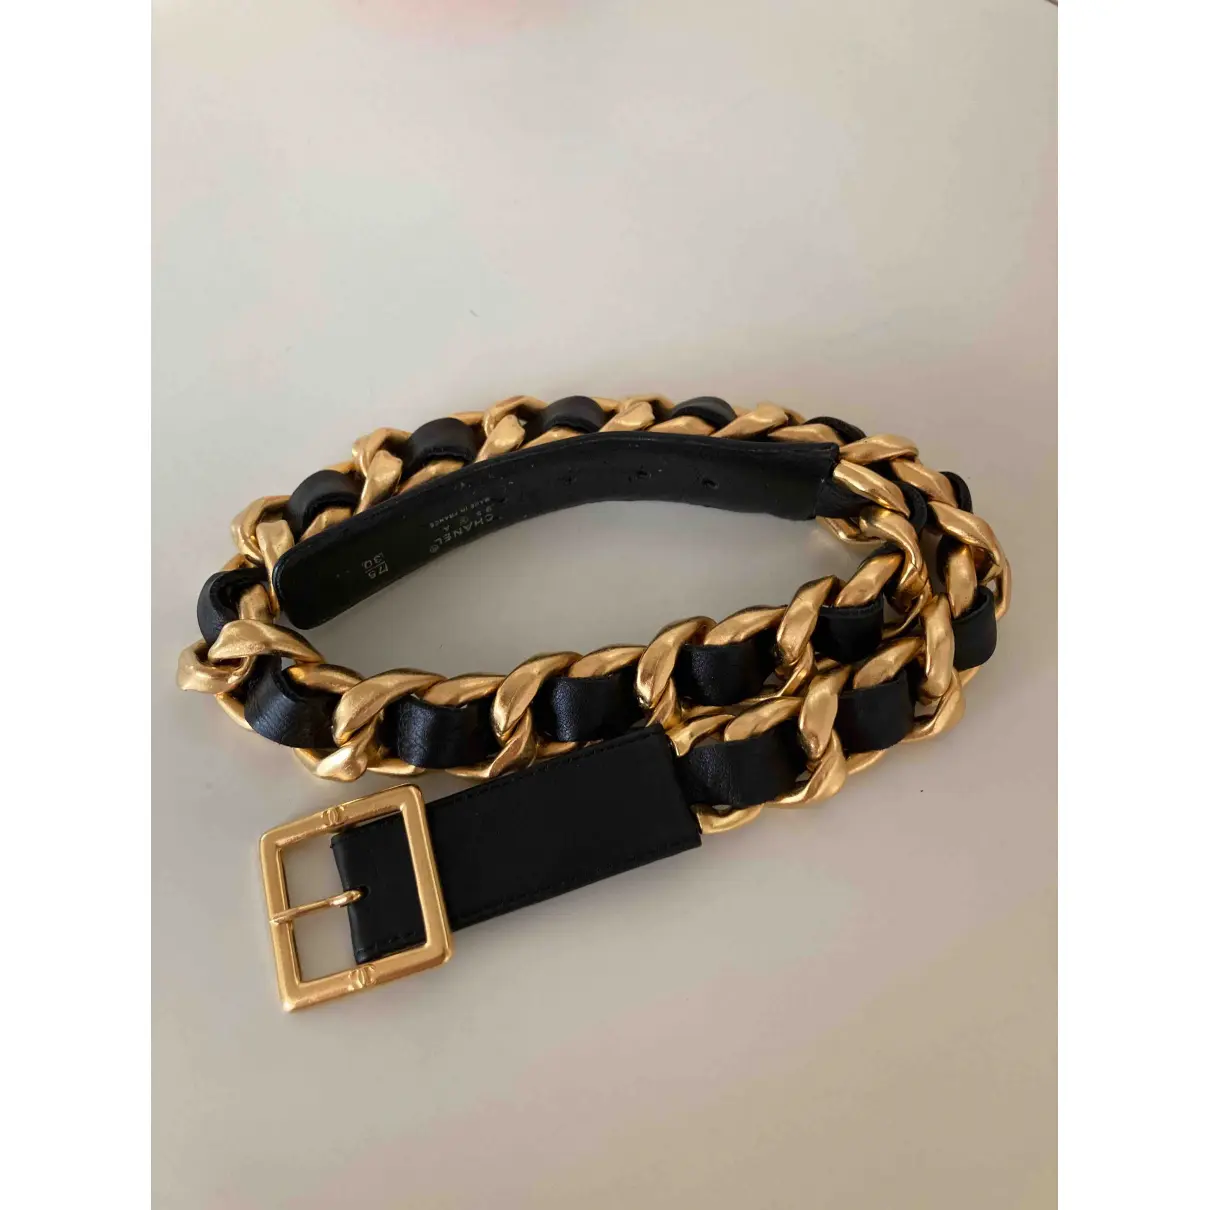 Buy Chanel Leather belt online - Vintage